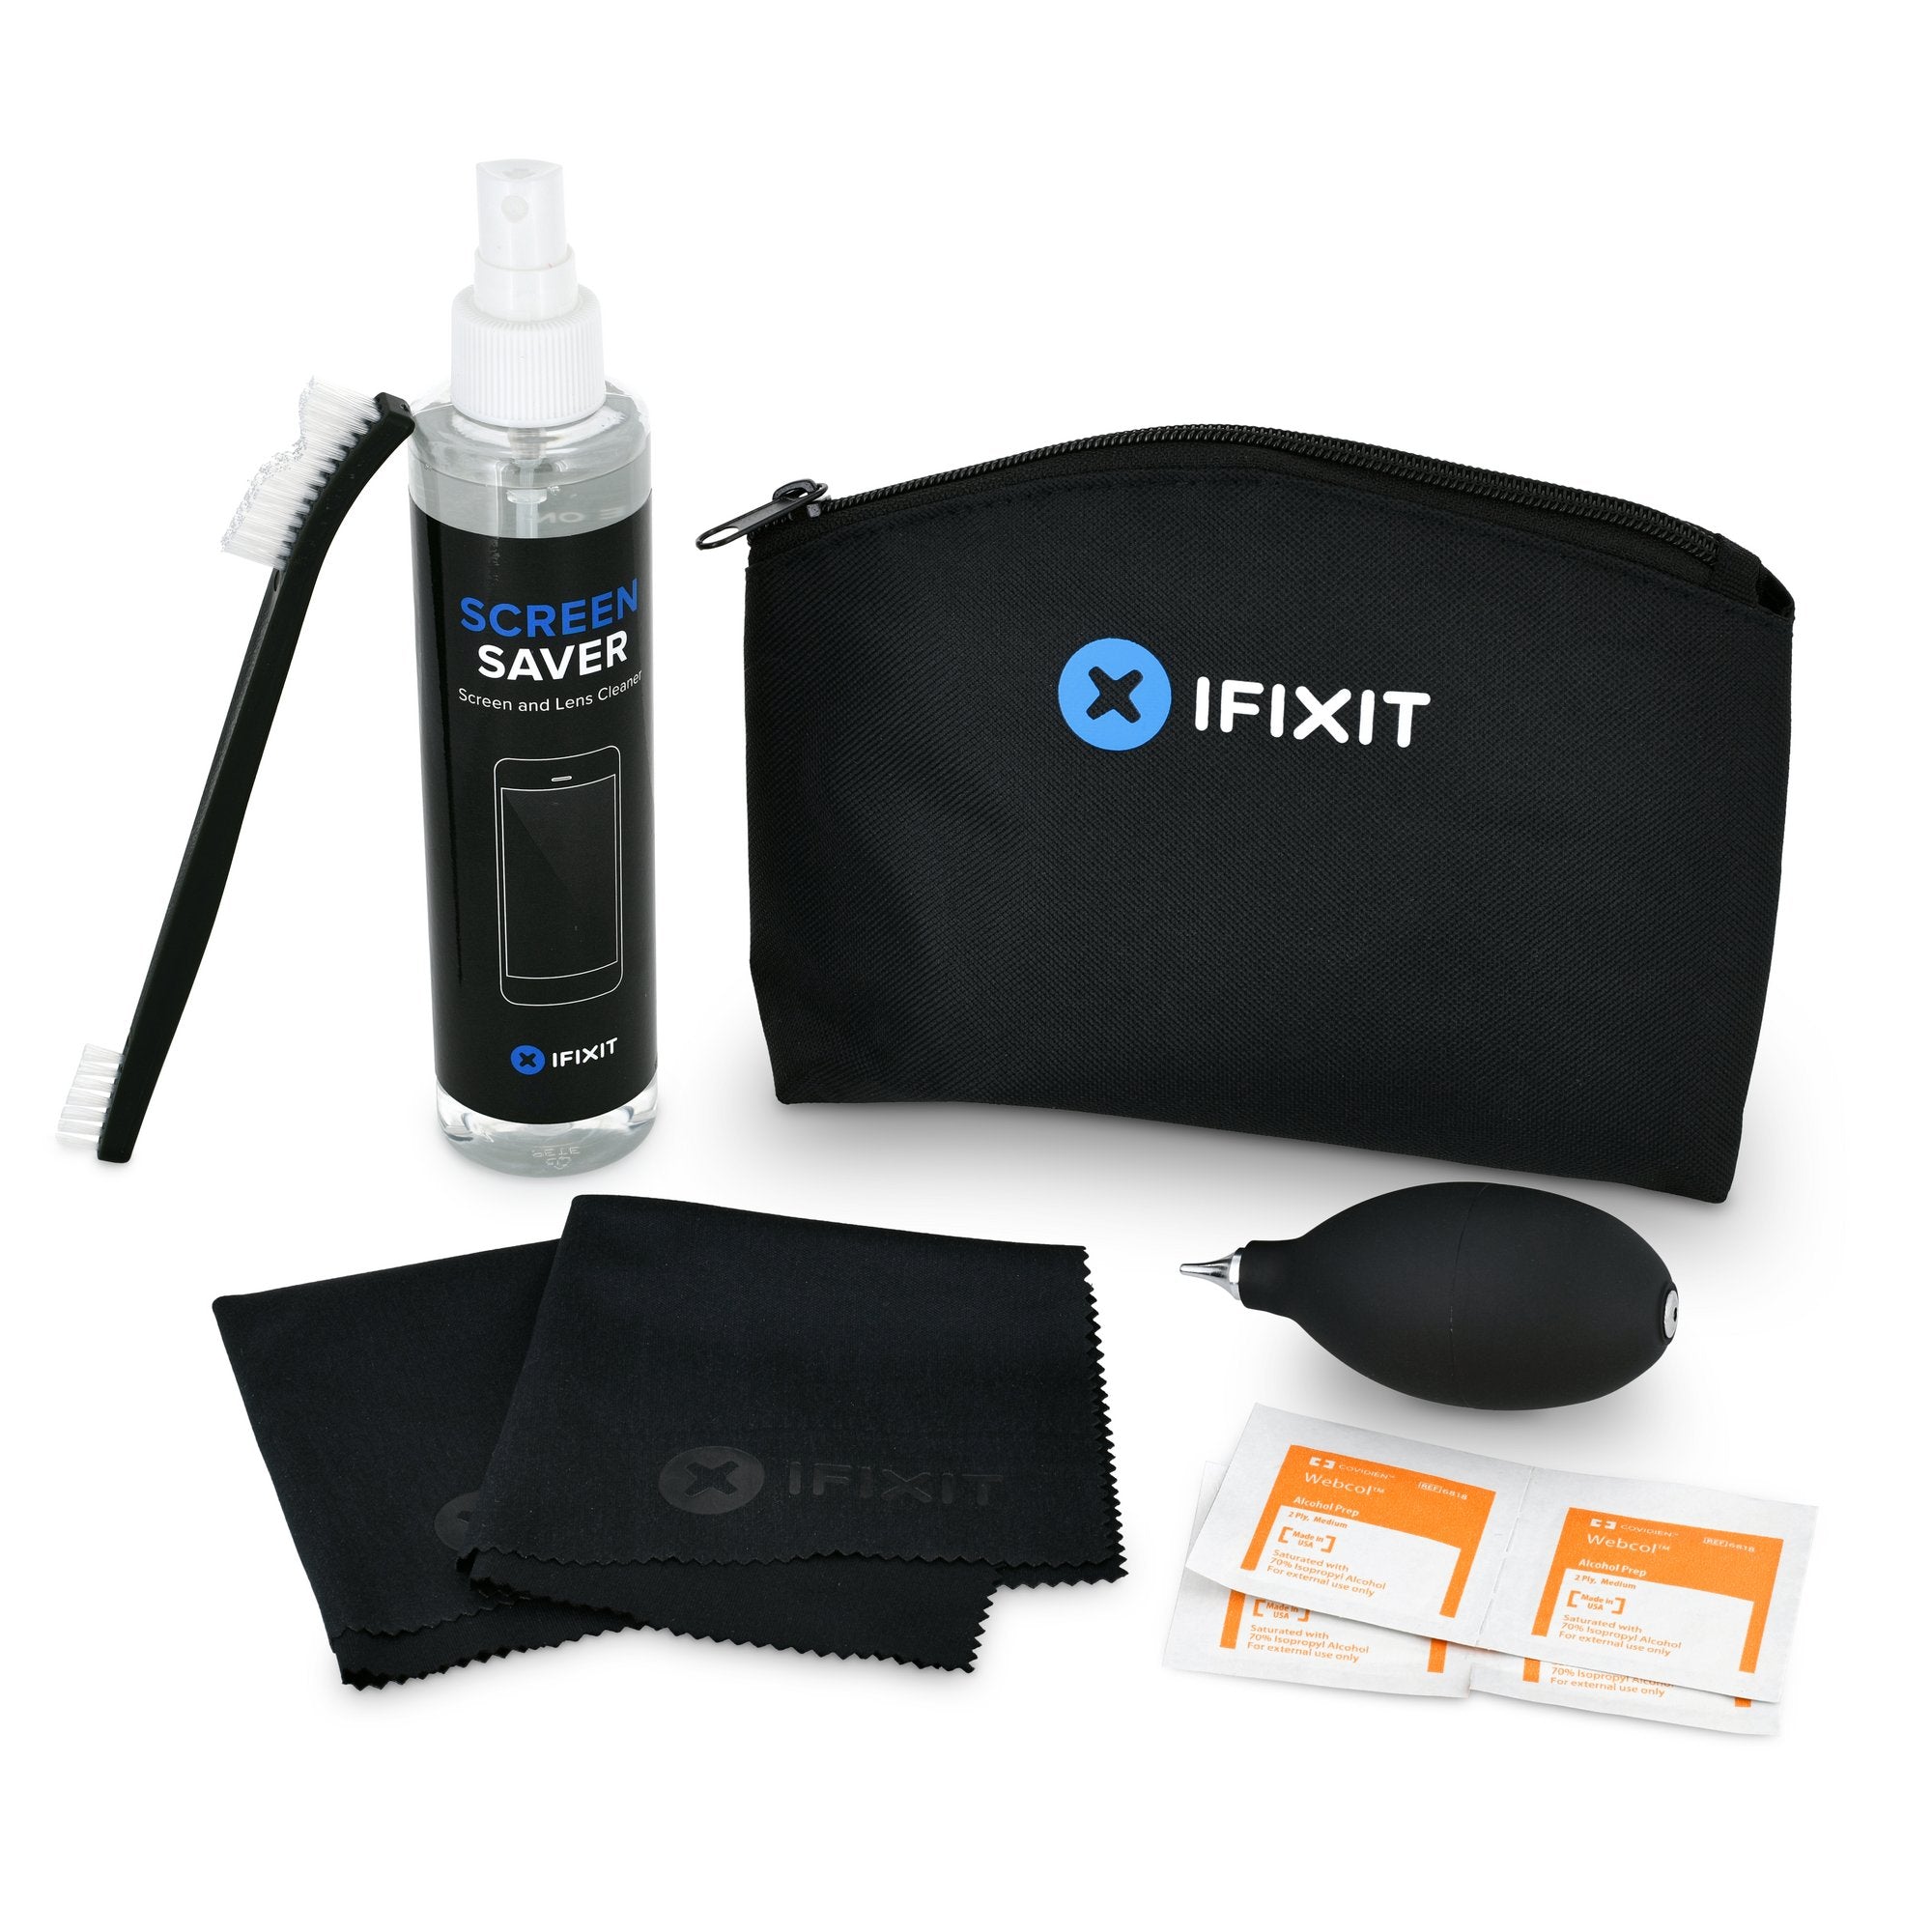 Pack nettoyage électronique – lingettes, spray nettoyant écran, brosse, etc.